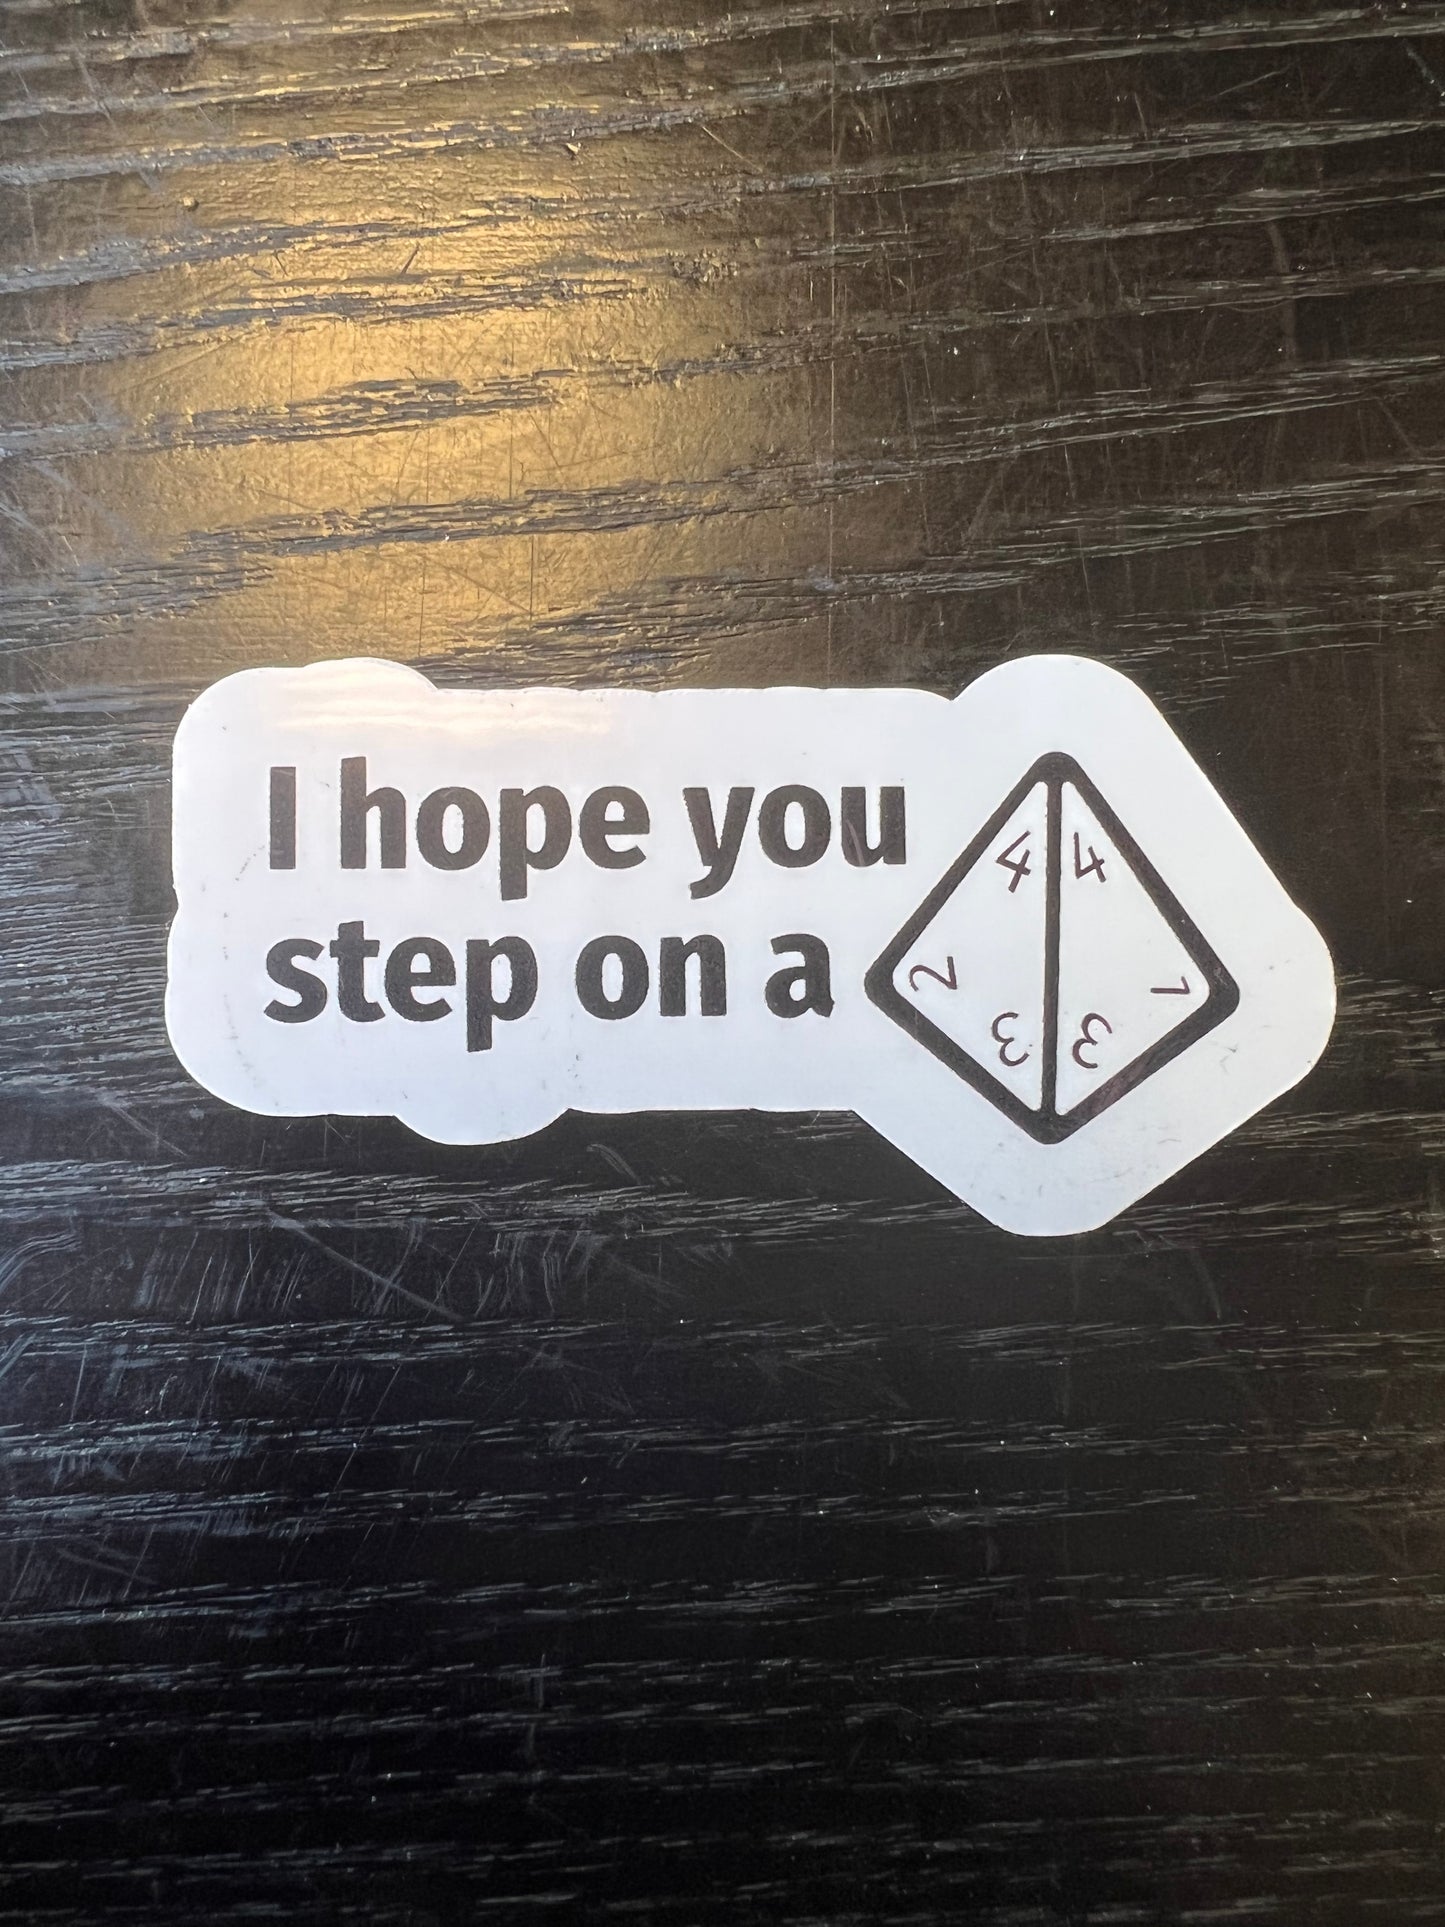 I hope you step on a D4 sticker